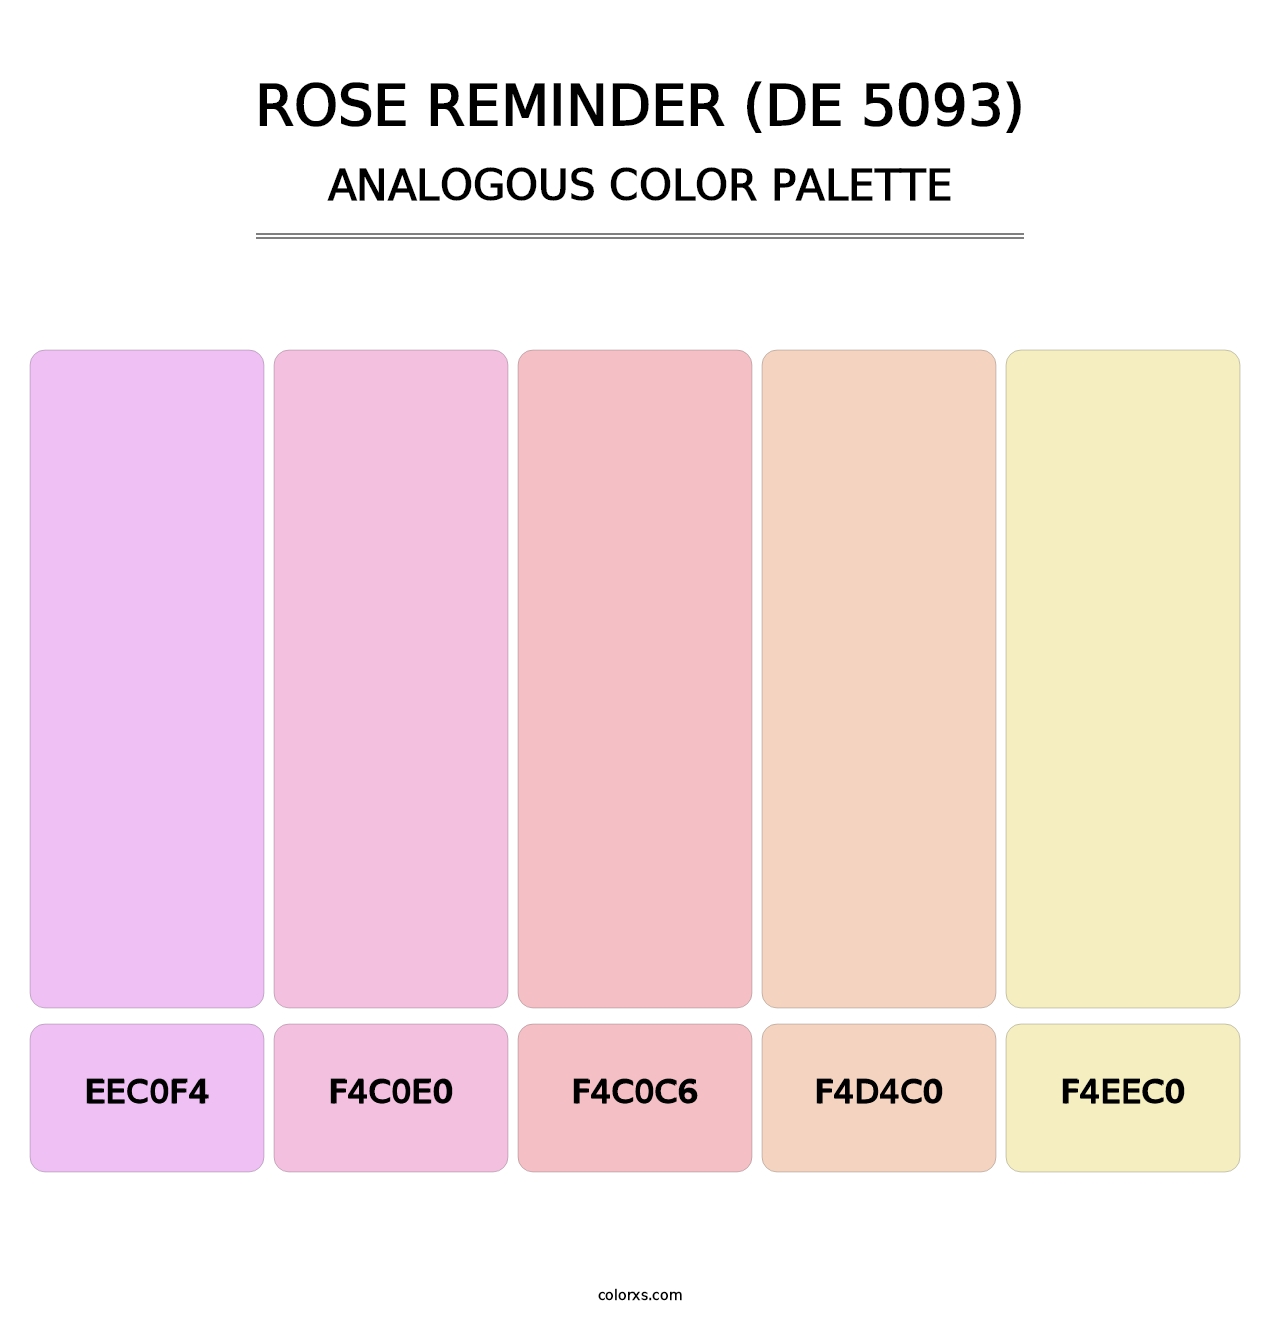 Rose Reminder (DE 5093) - Analogous Color Palette